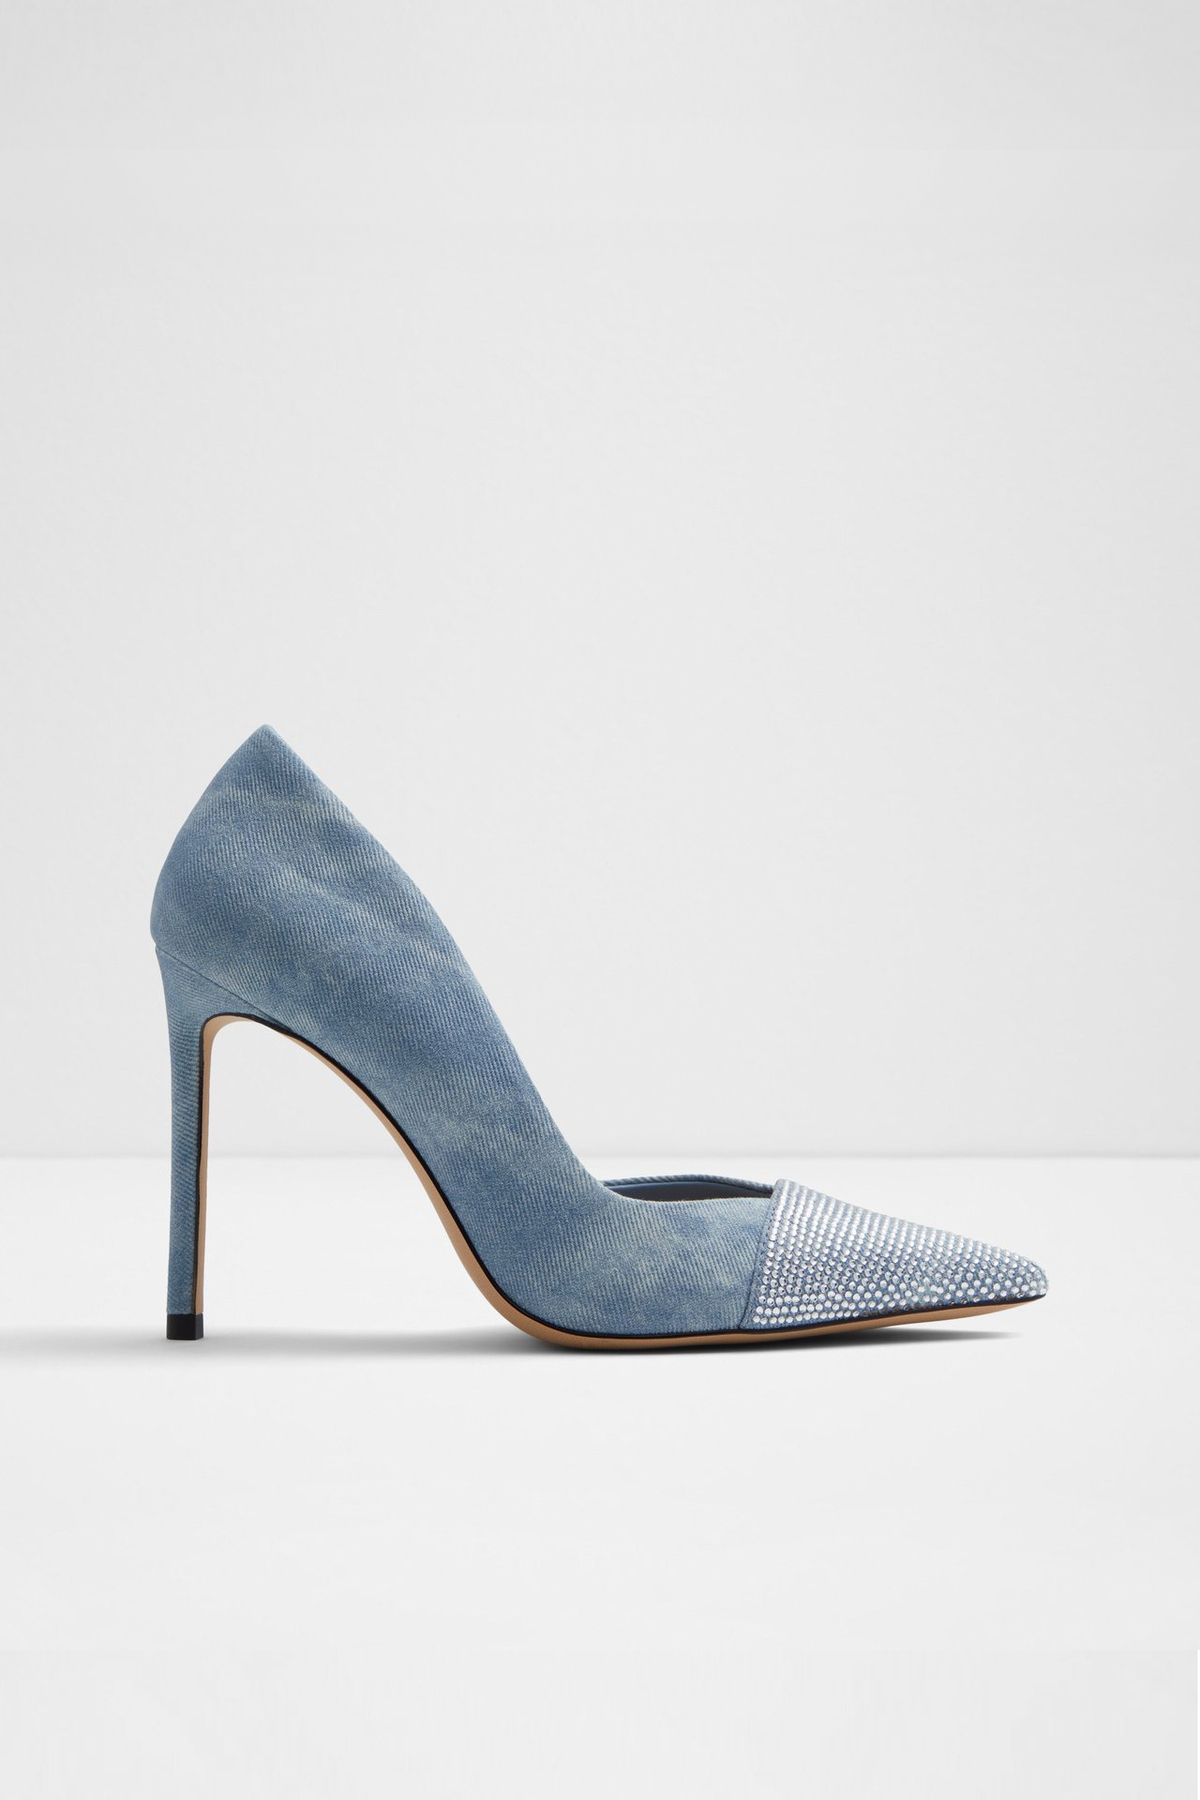 Aldo MAZY - Mavi Kadın Topuklu Ayakkabı